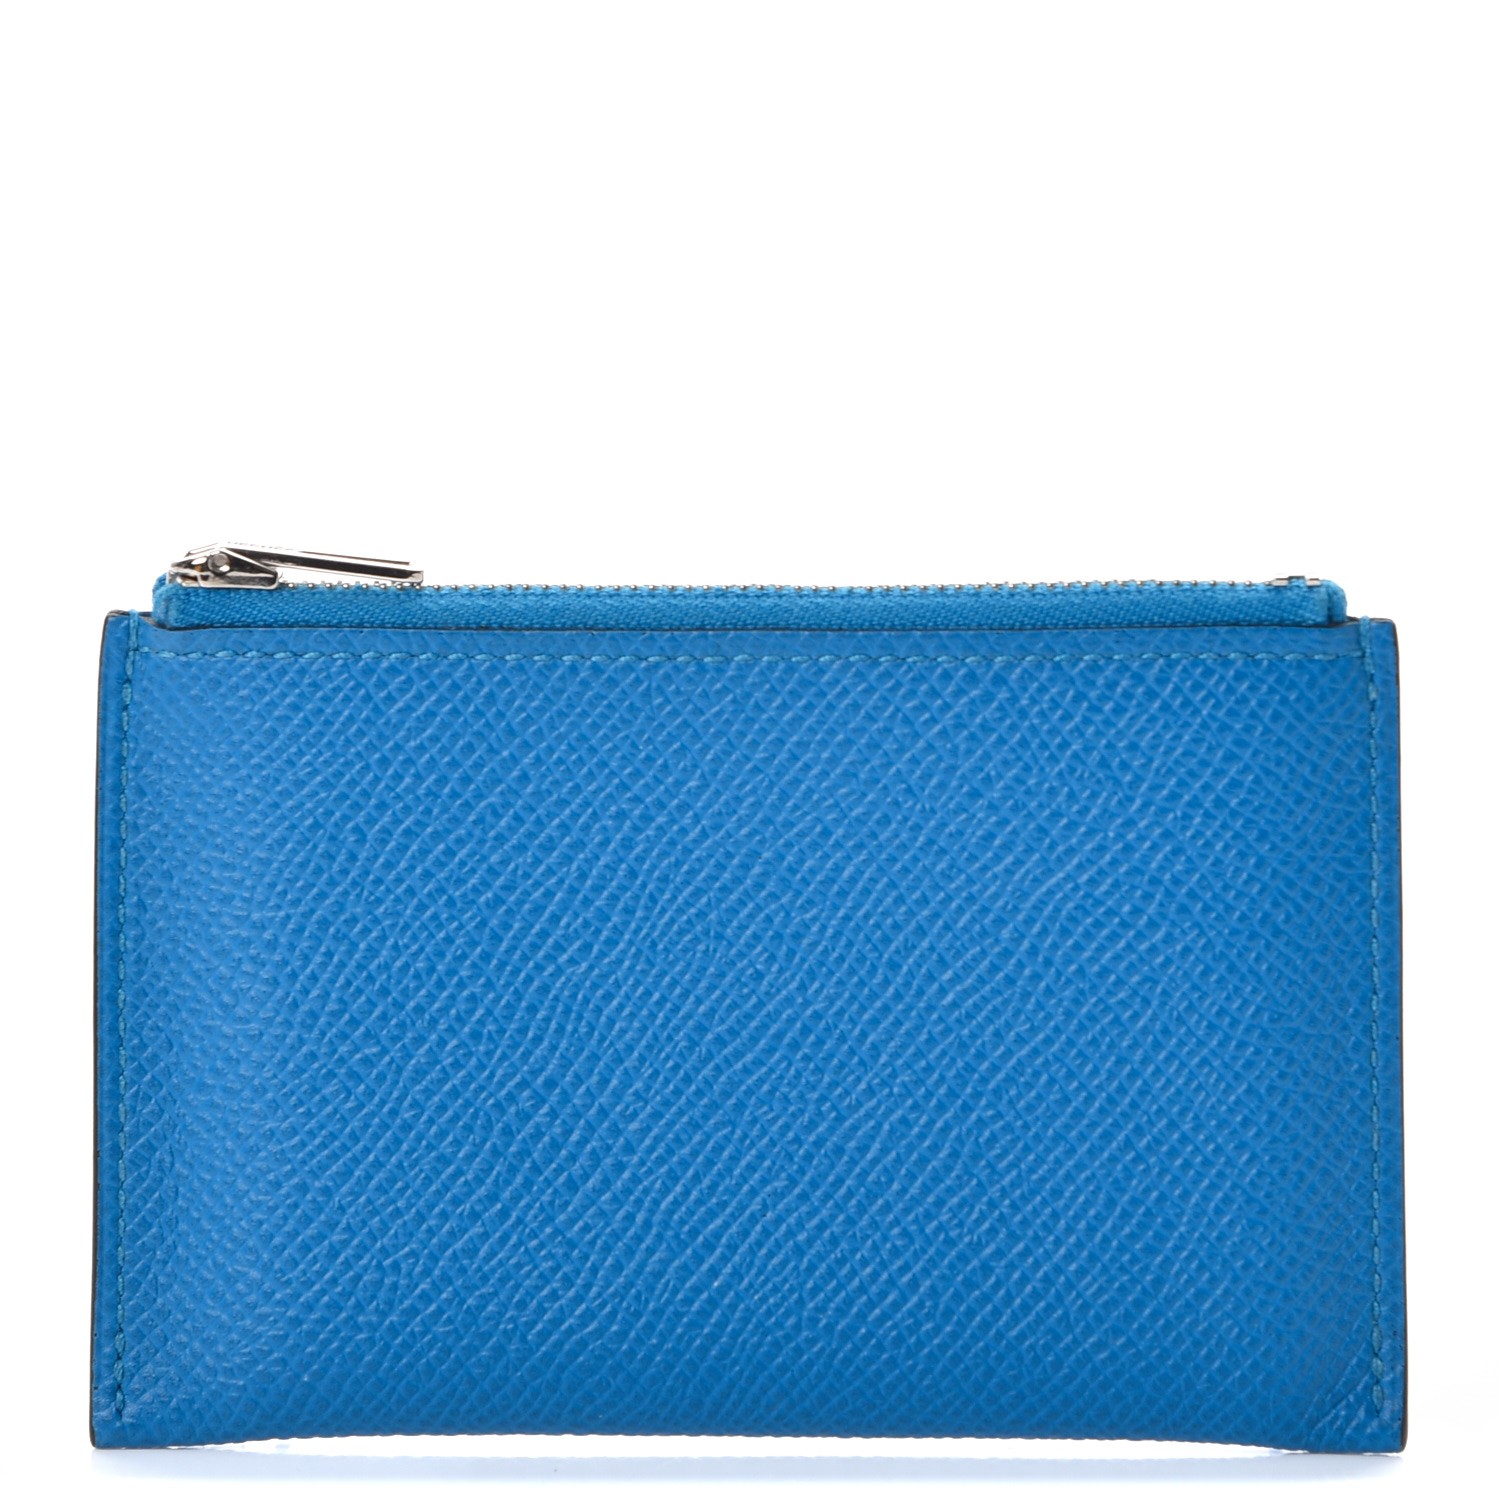 HERMES Epsom Passant Compact Wallet Zipped Coin Purse Bleu Zanzibar 246365